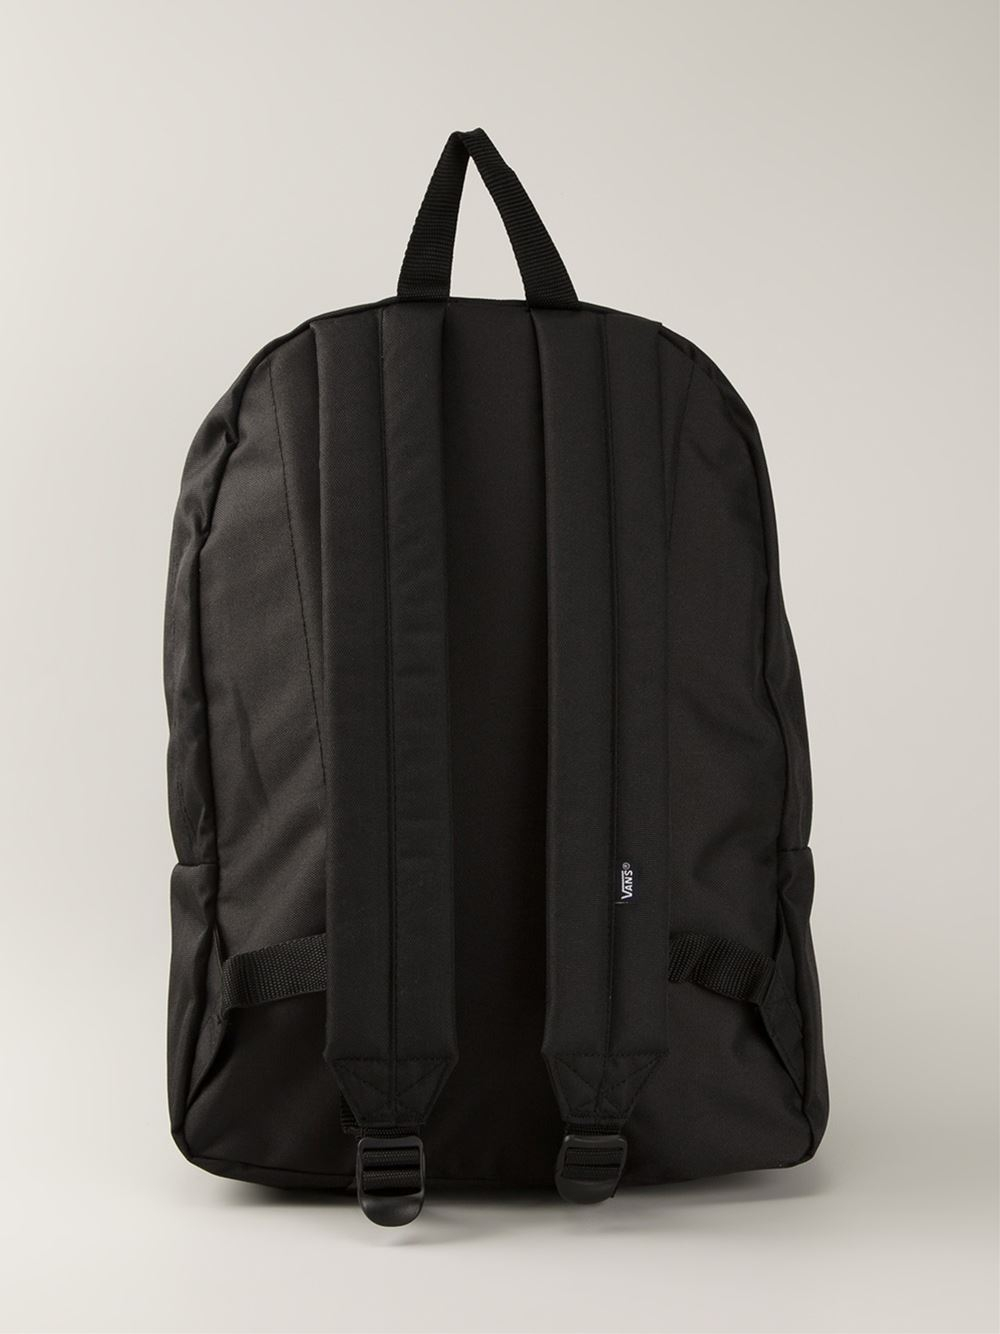 Lyst - Vans Embroidered Logo Backpack in Black for Men